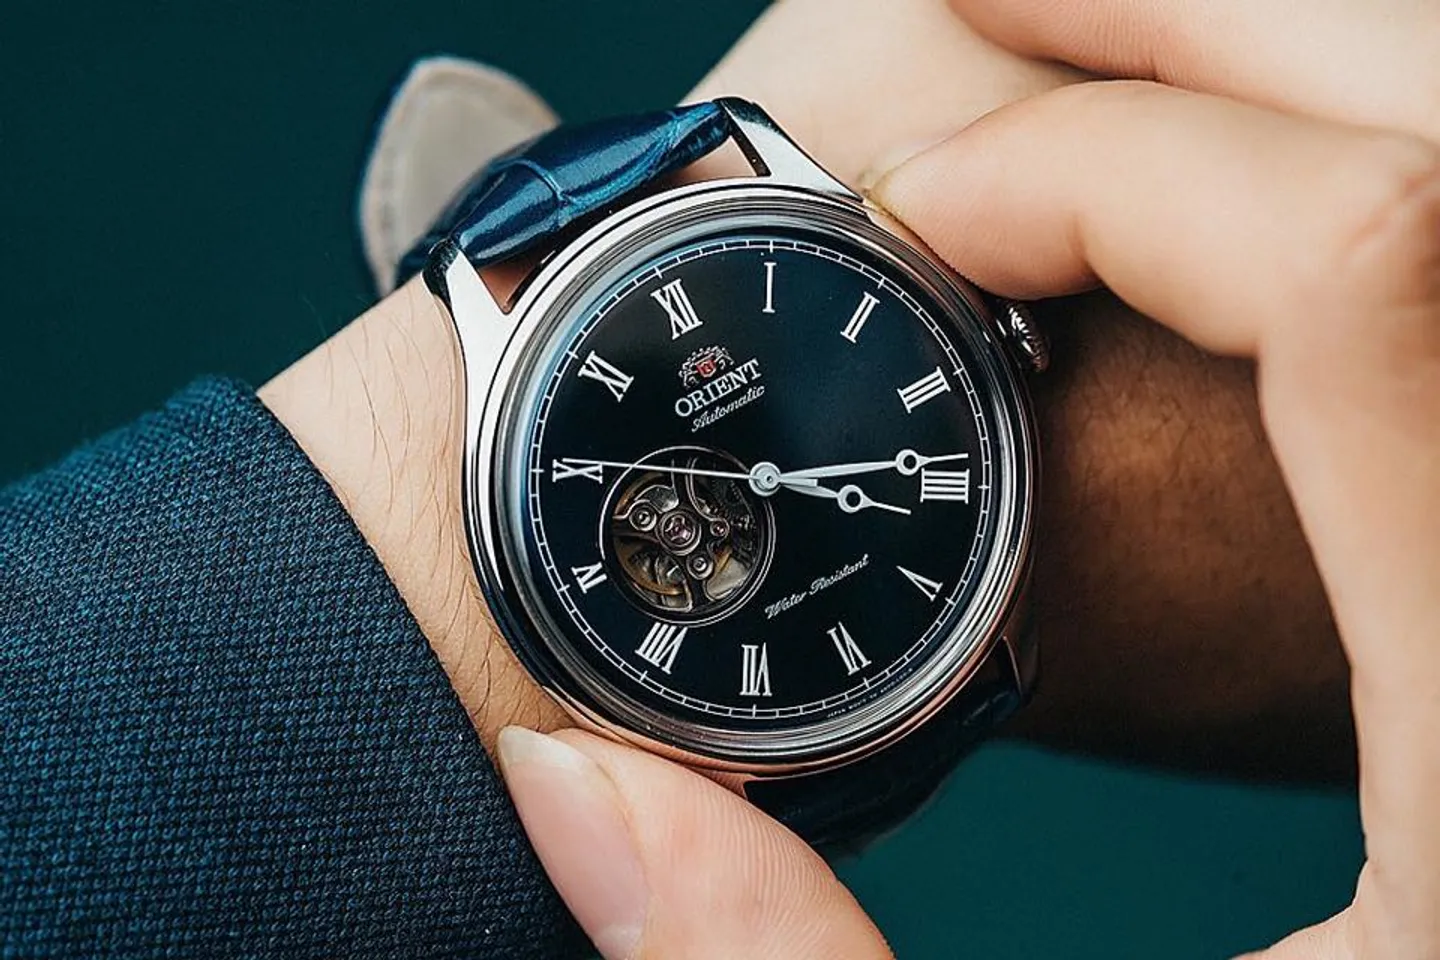 Sang trọng, nam tính và lịch lãm là những lời khen người dùng dành tặng chiếc đồng hồ Orient nam này